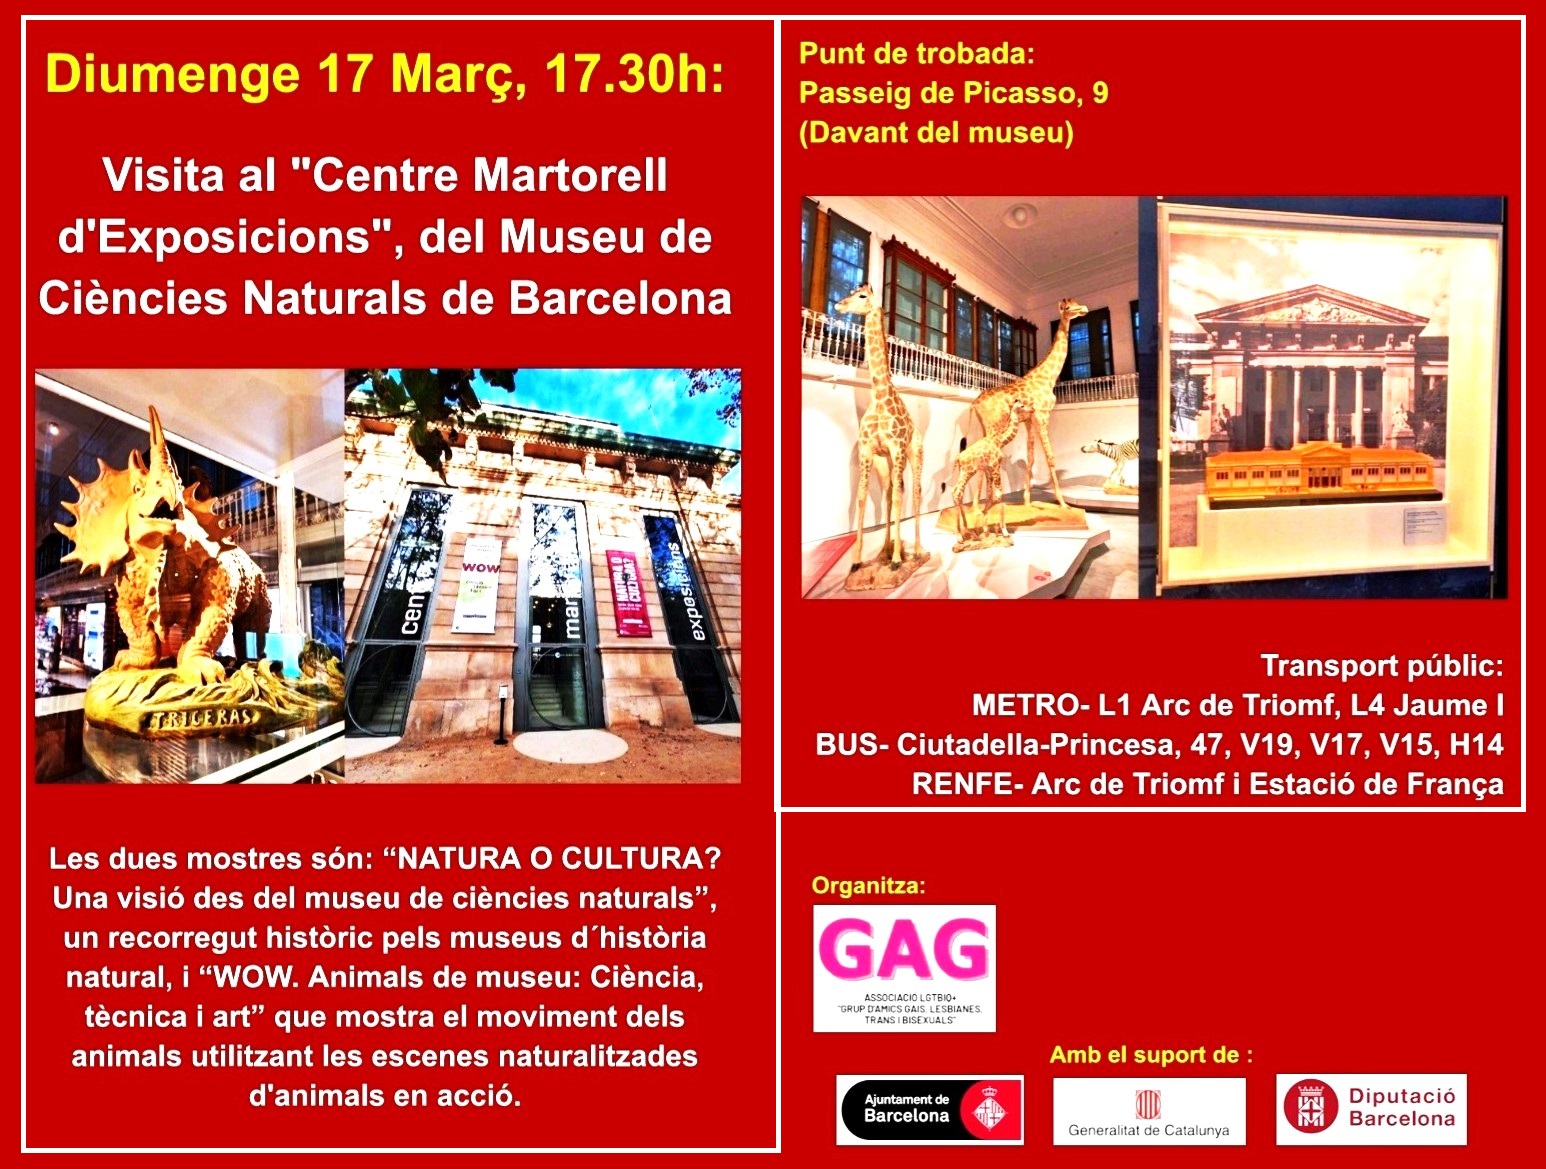 Diumenge 17 Març, 17.30h: Visita al Museu de Ciències Naturals de Barcelona